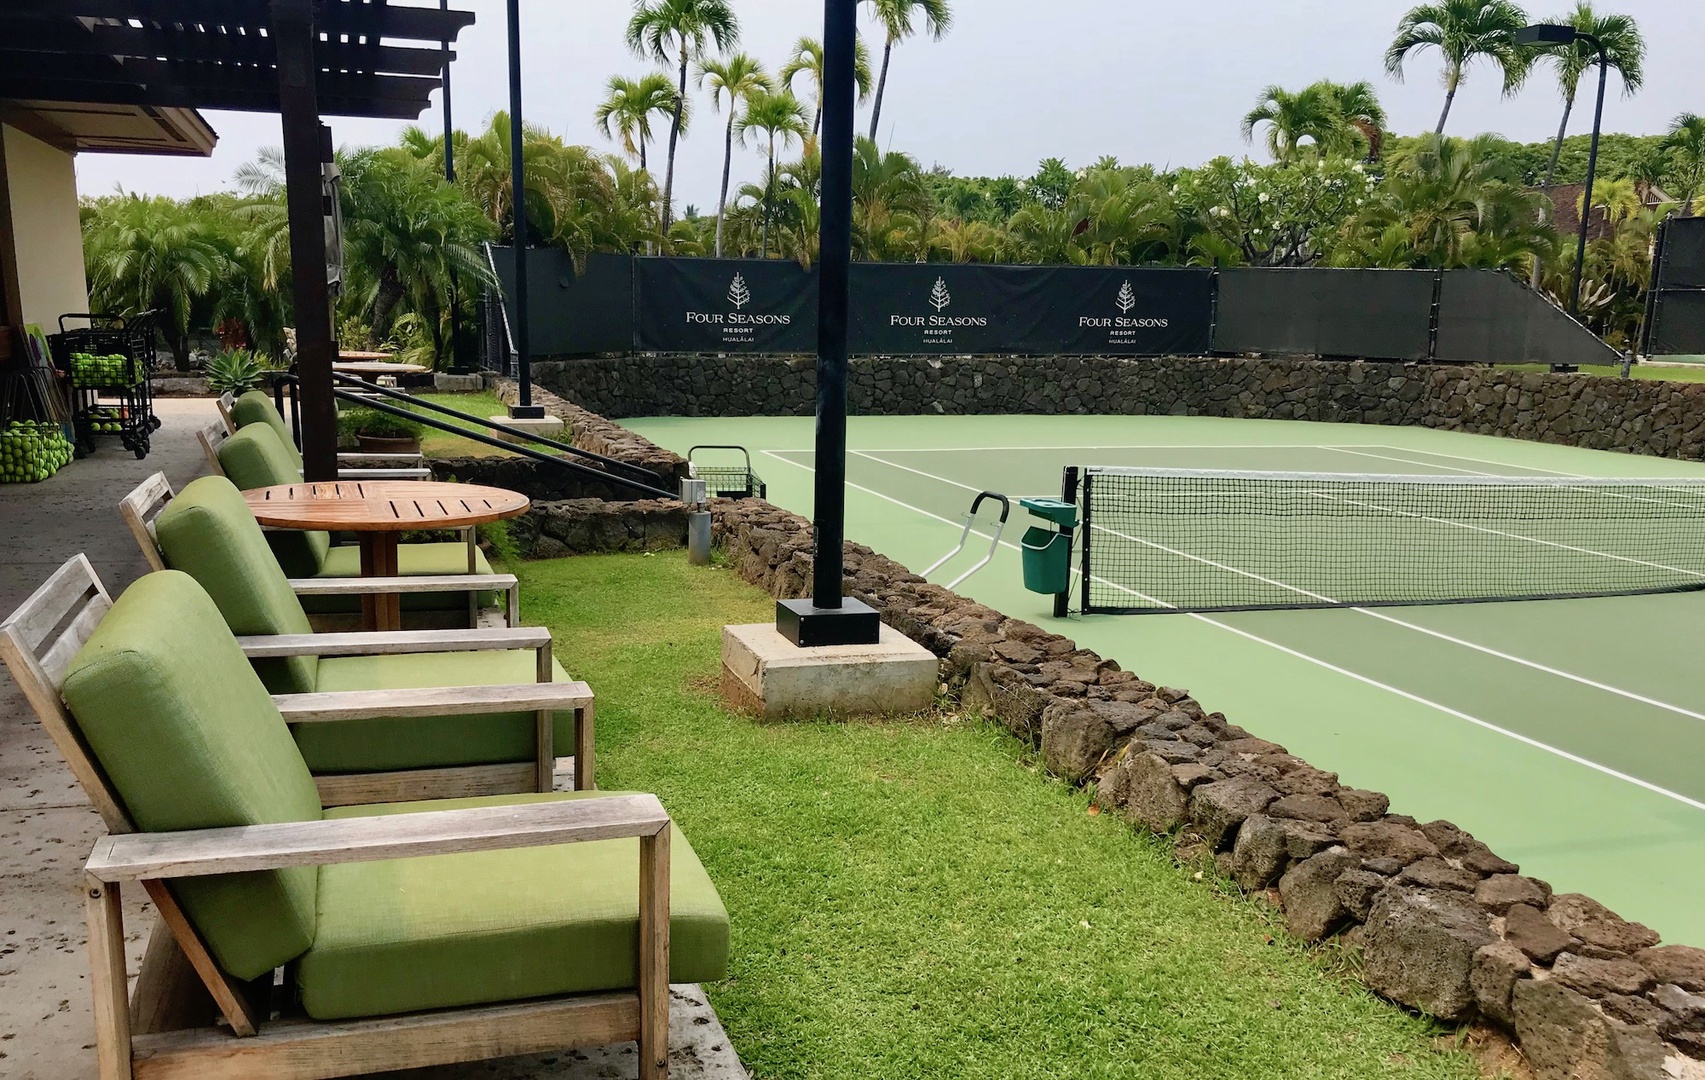 Kailua Kona Vacation Rentals, 4BD Pakui Street (147) Estate Home at Four Seasons Resort at Hualalai - Four Seasons Resort at Hualalai Tennis Courts